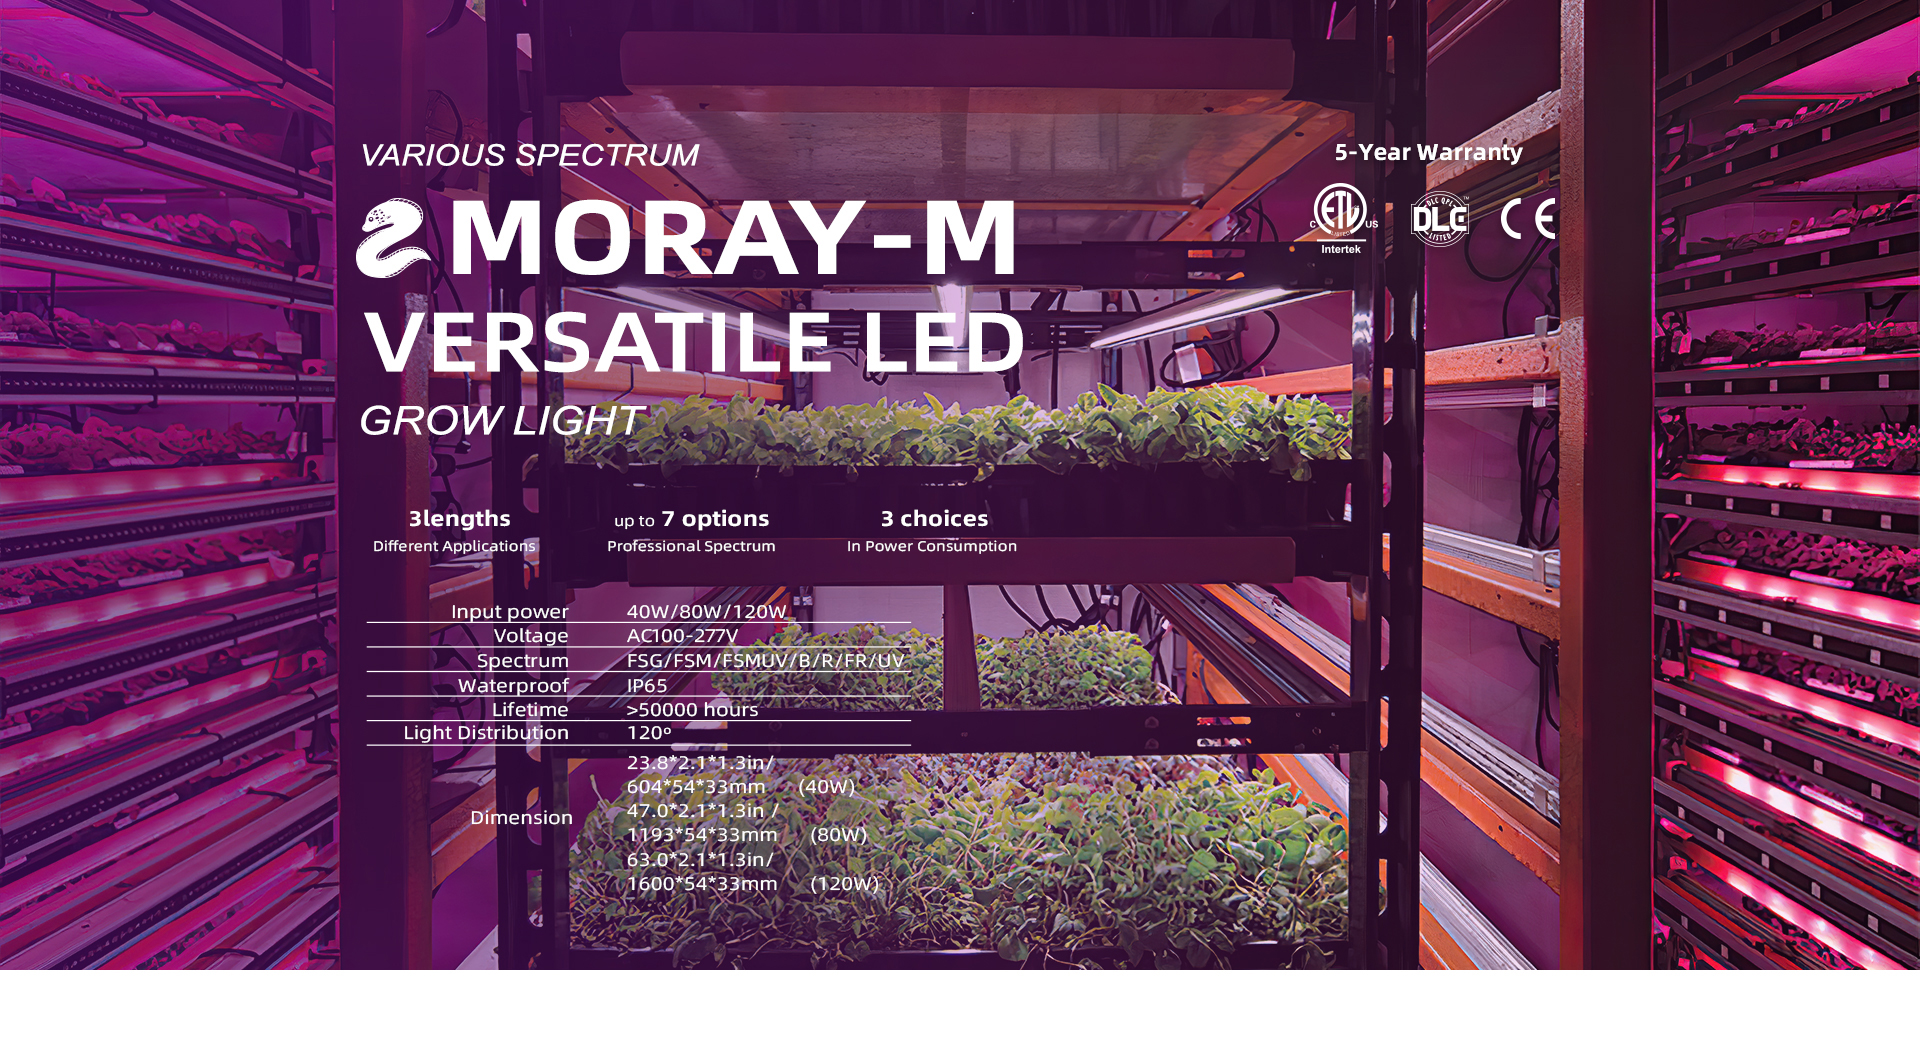 Moray-M LED grow lights